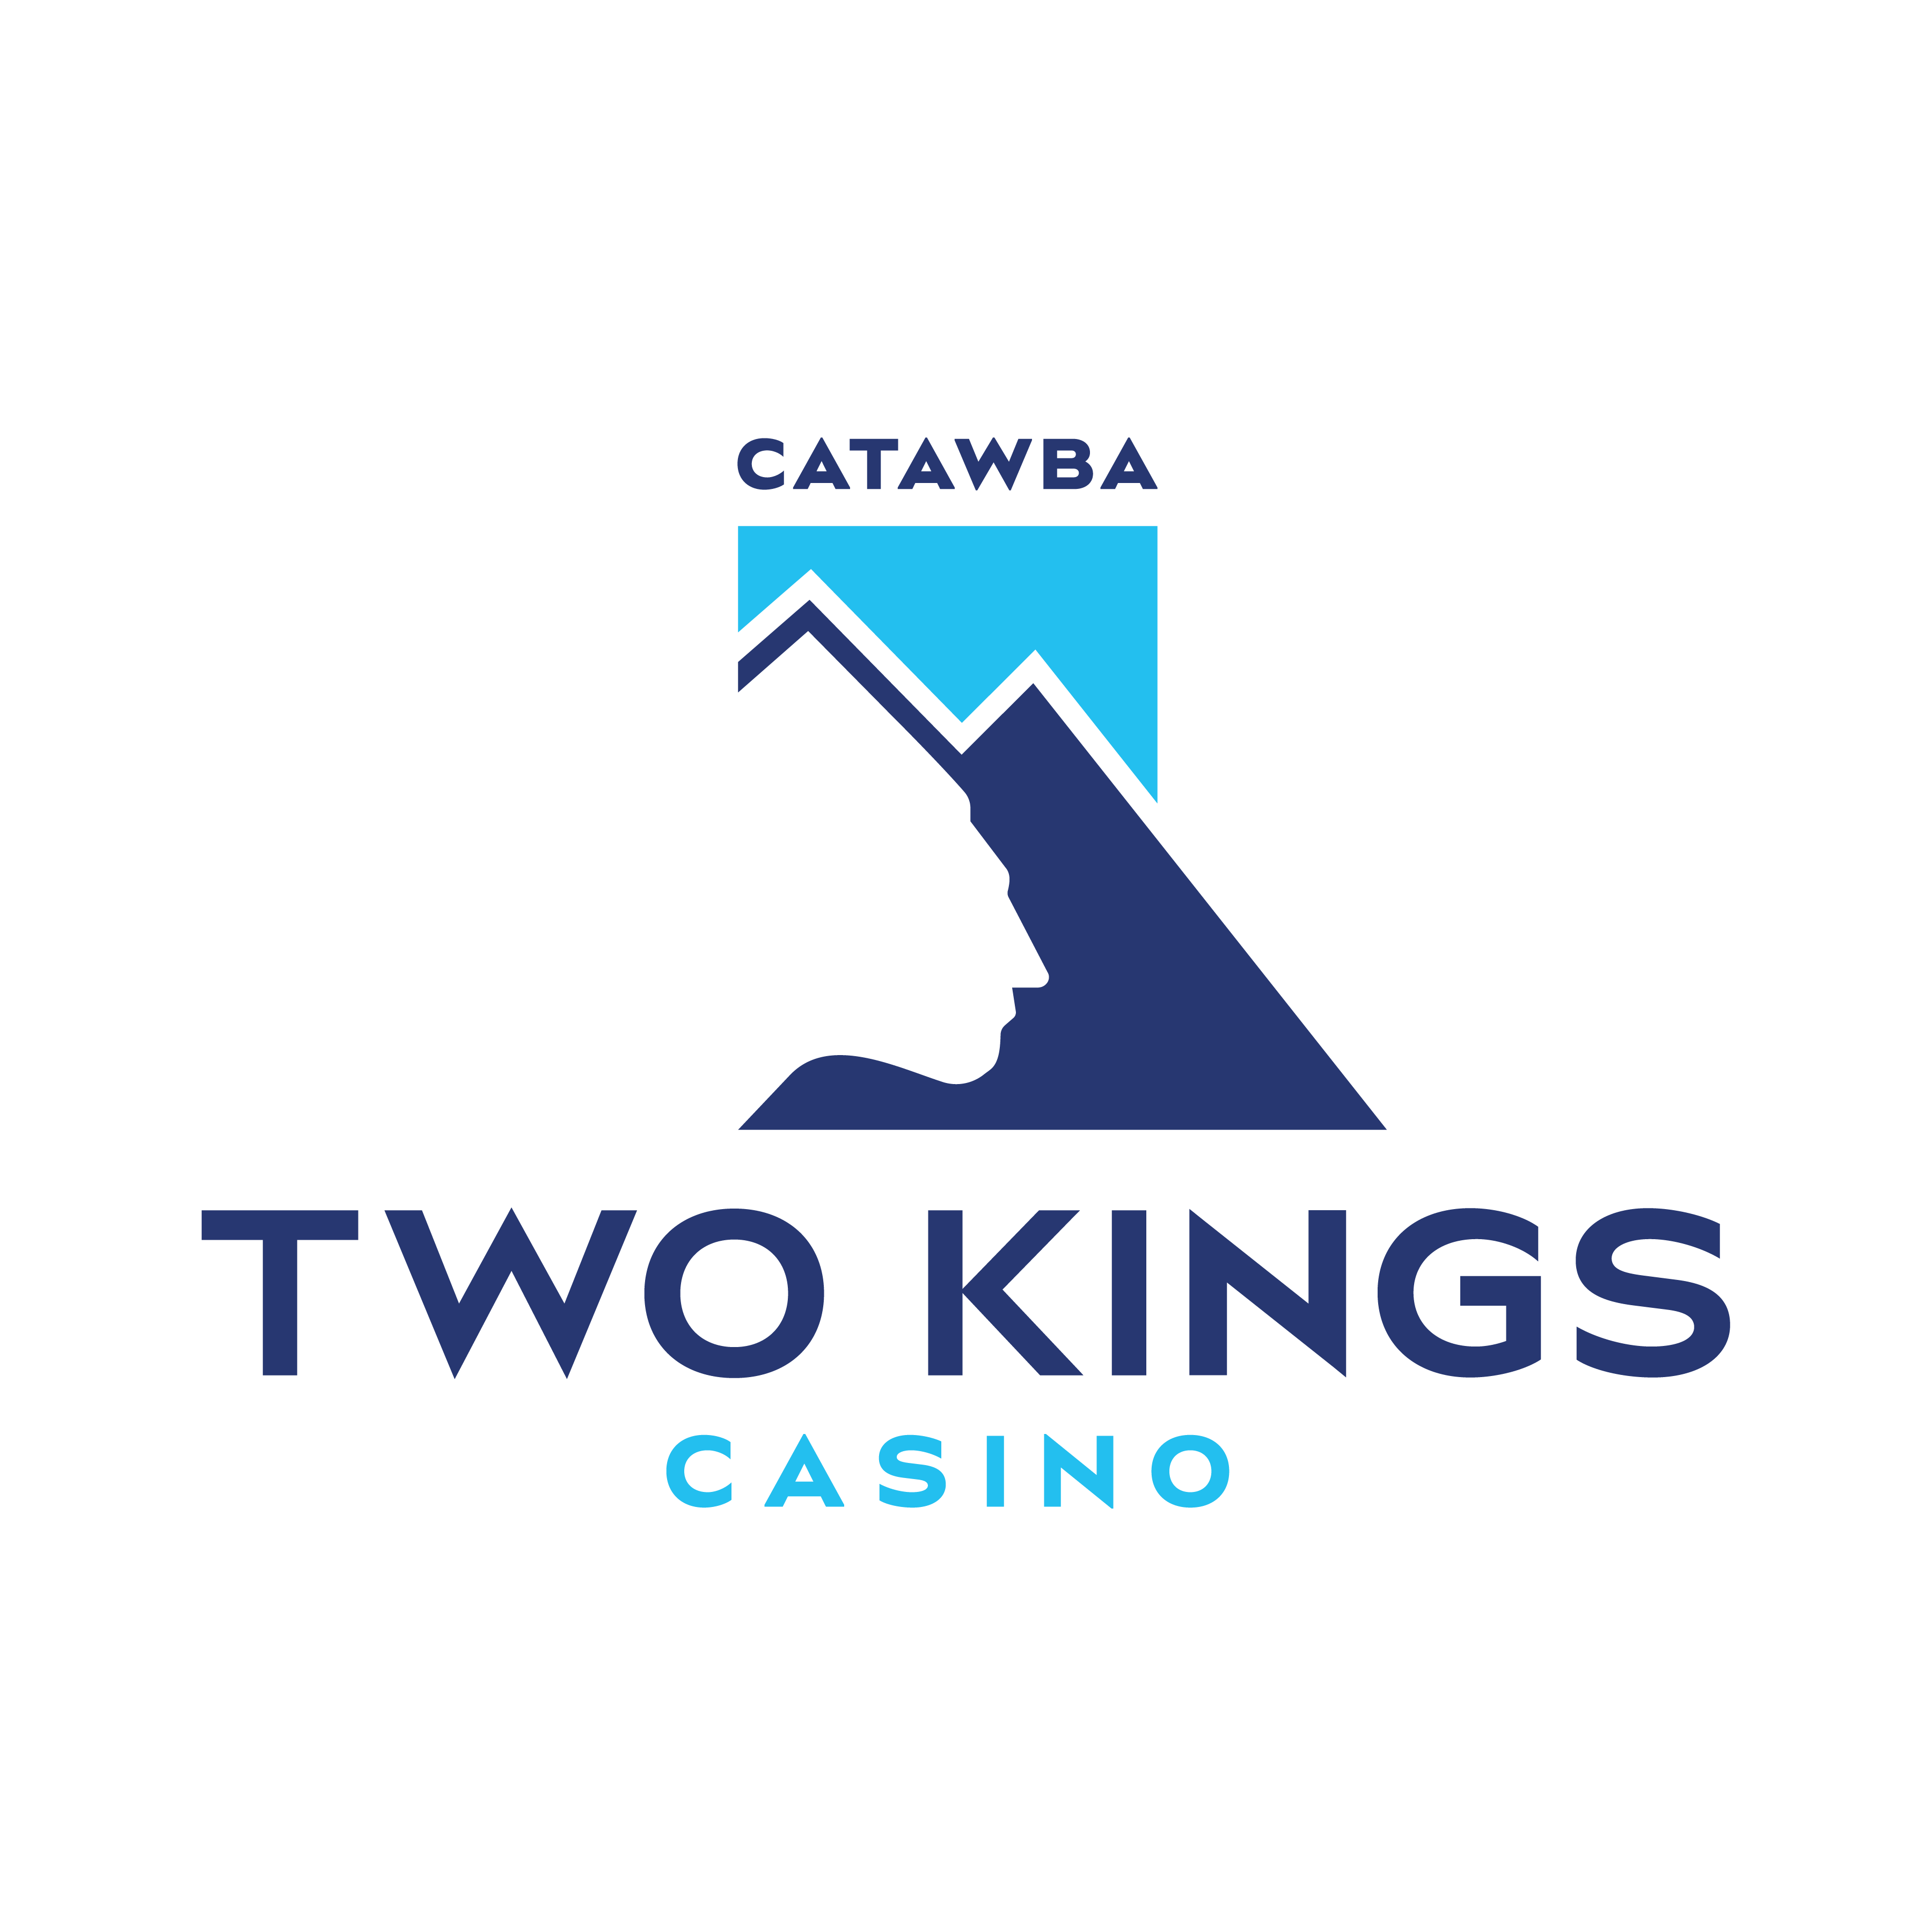 Catawba_TwoKings_Casino_Logo_Stack_Color